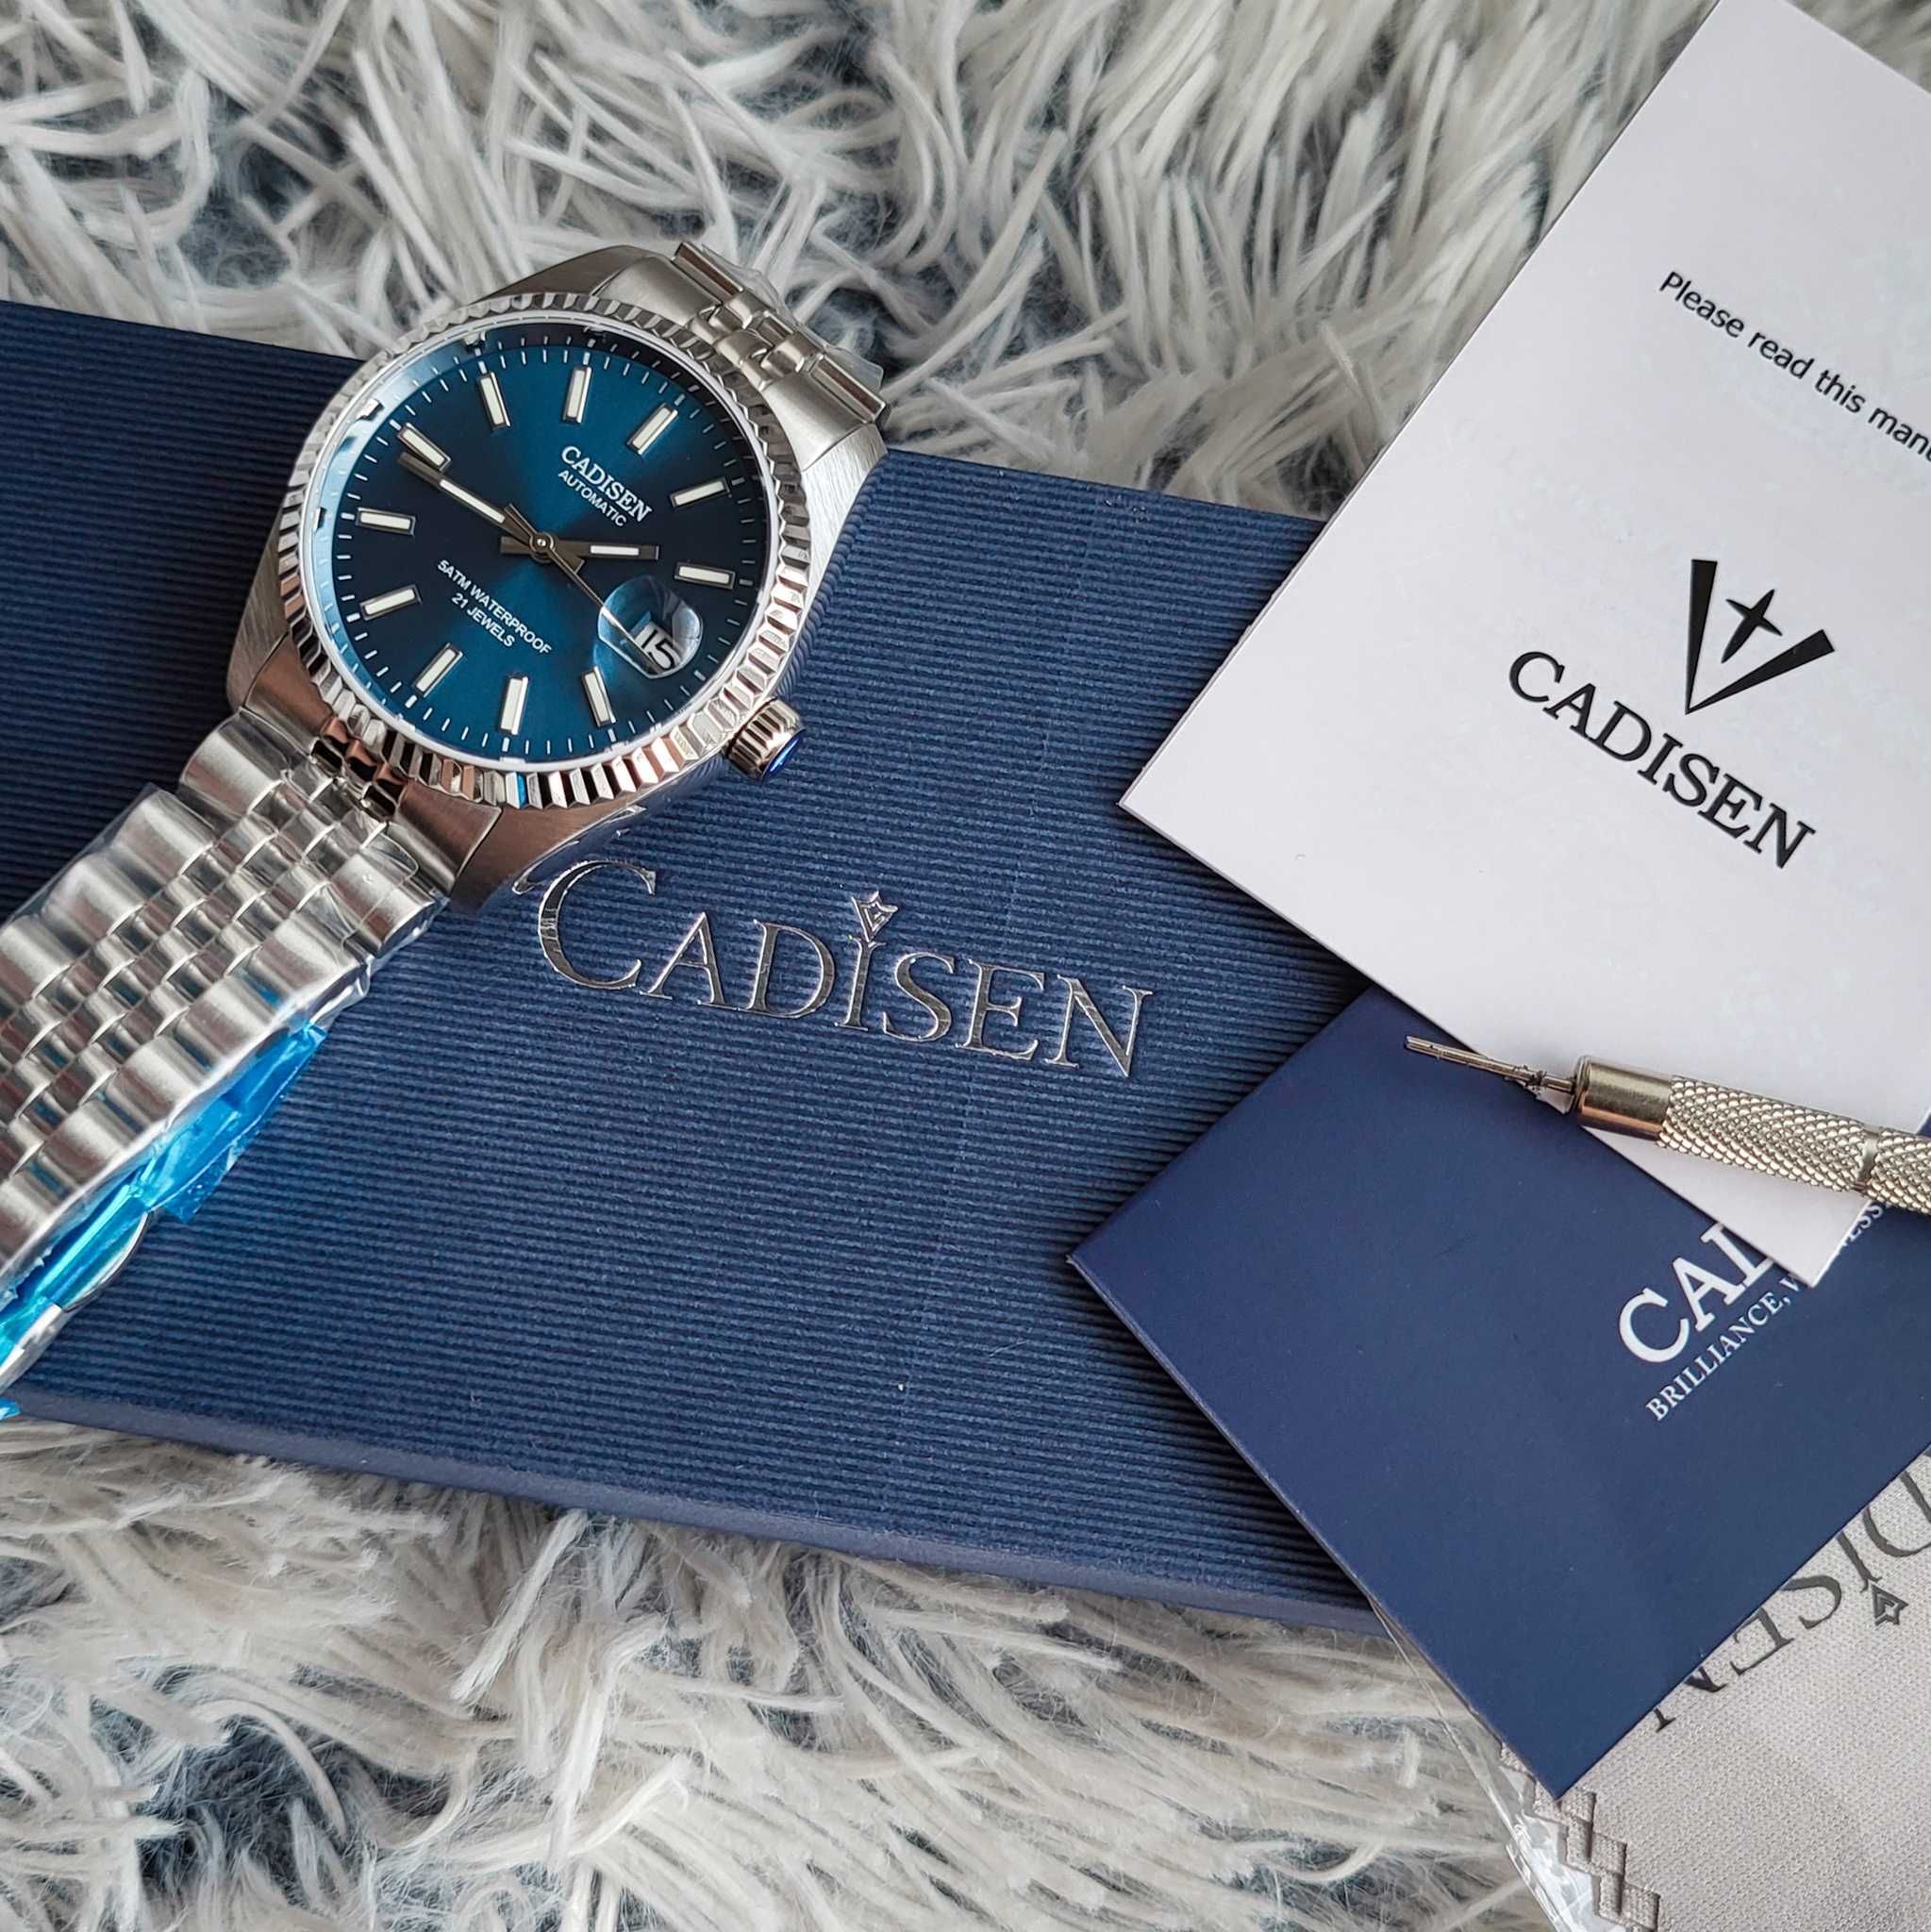 Zegarek Cadisen automat błękitna tarcza srebrny